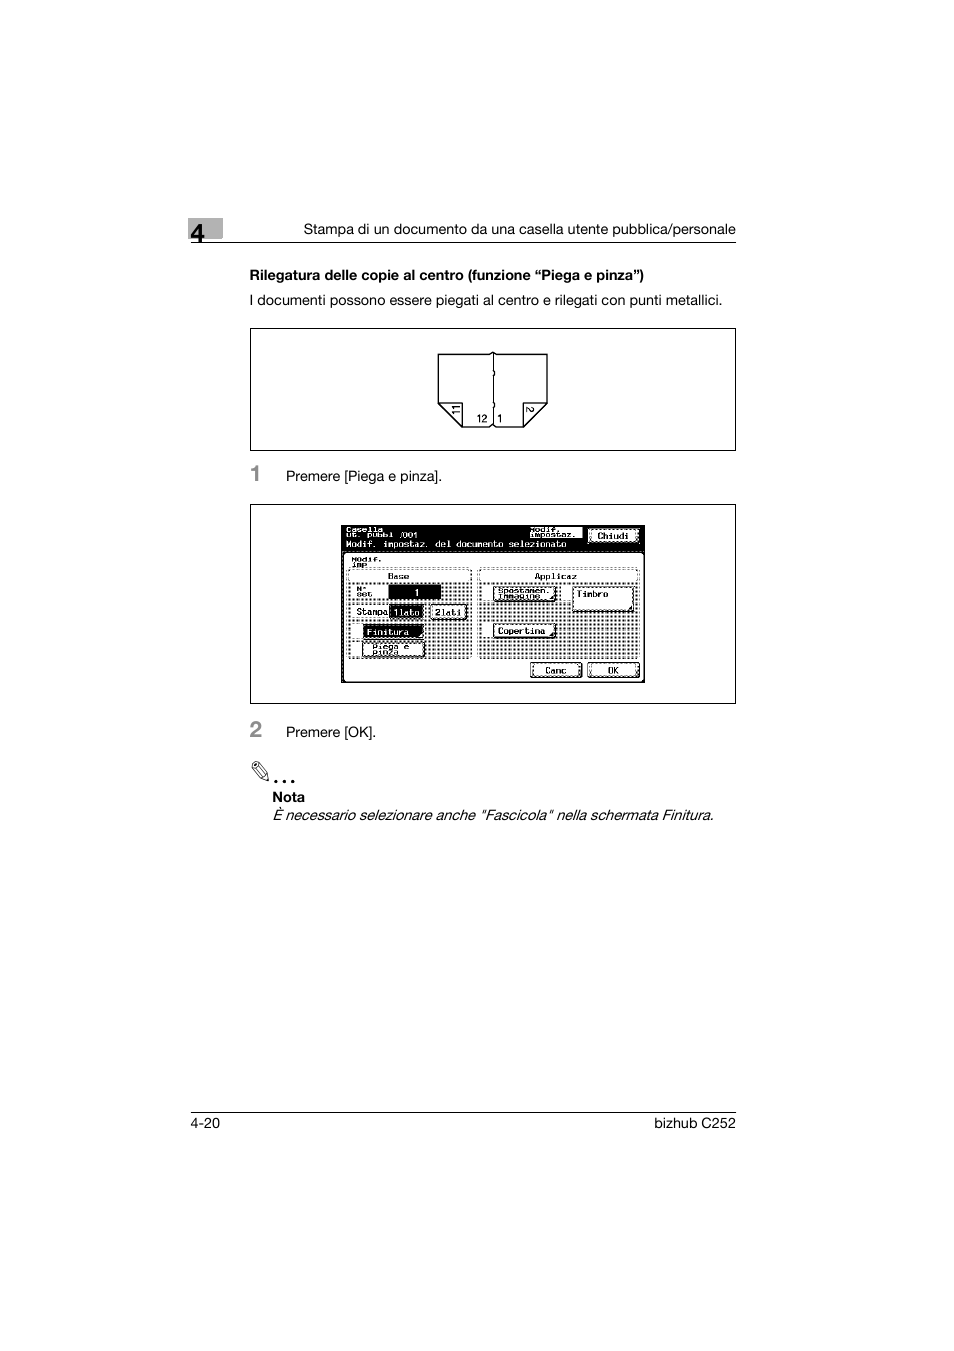 P. 4-20 | Konica Minolta BIZHUB C252 Manuale d'uso | Pagina 66 / 246